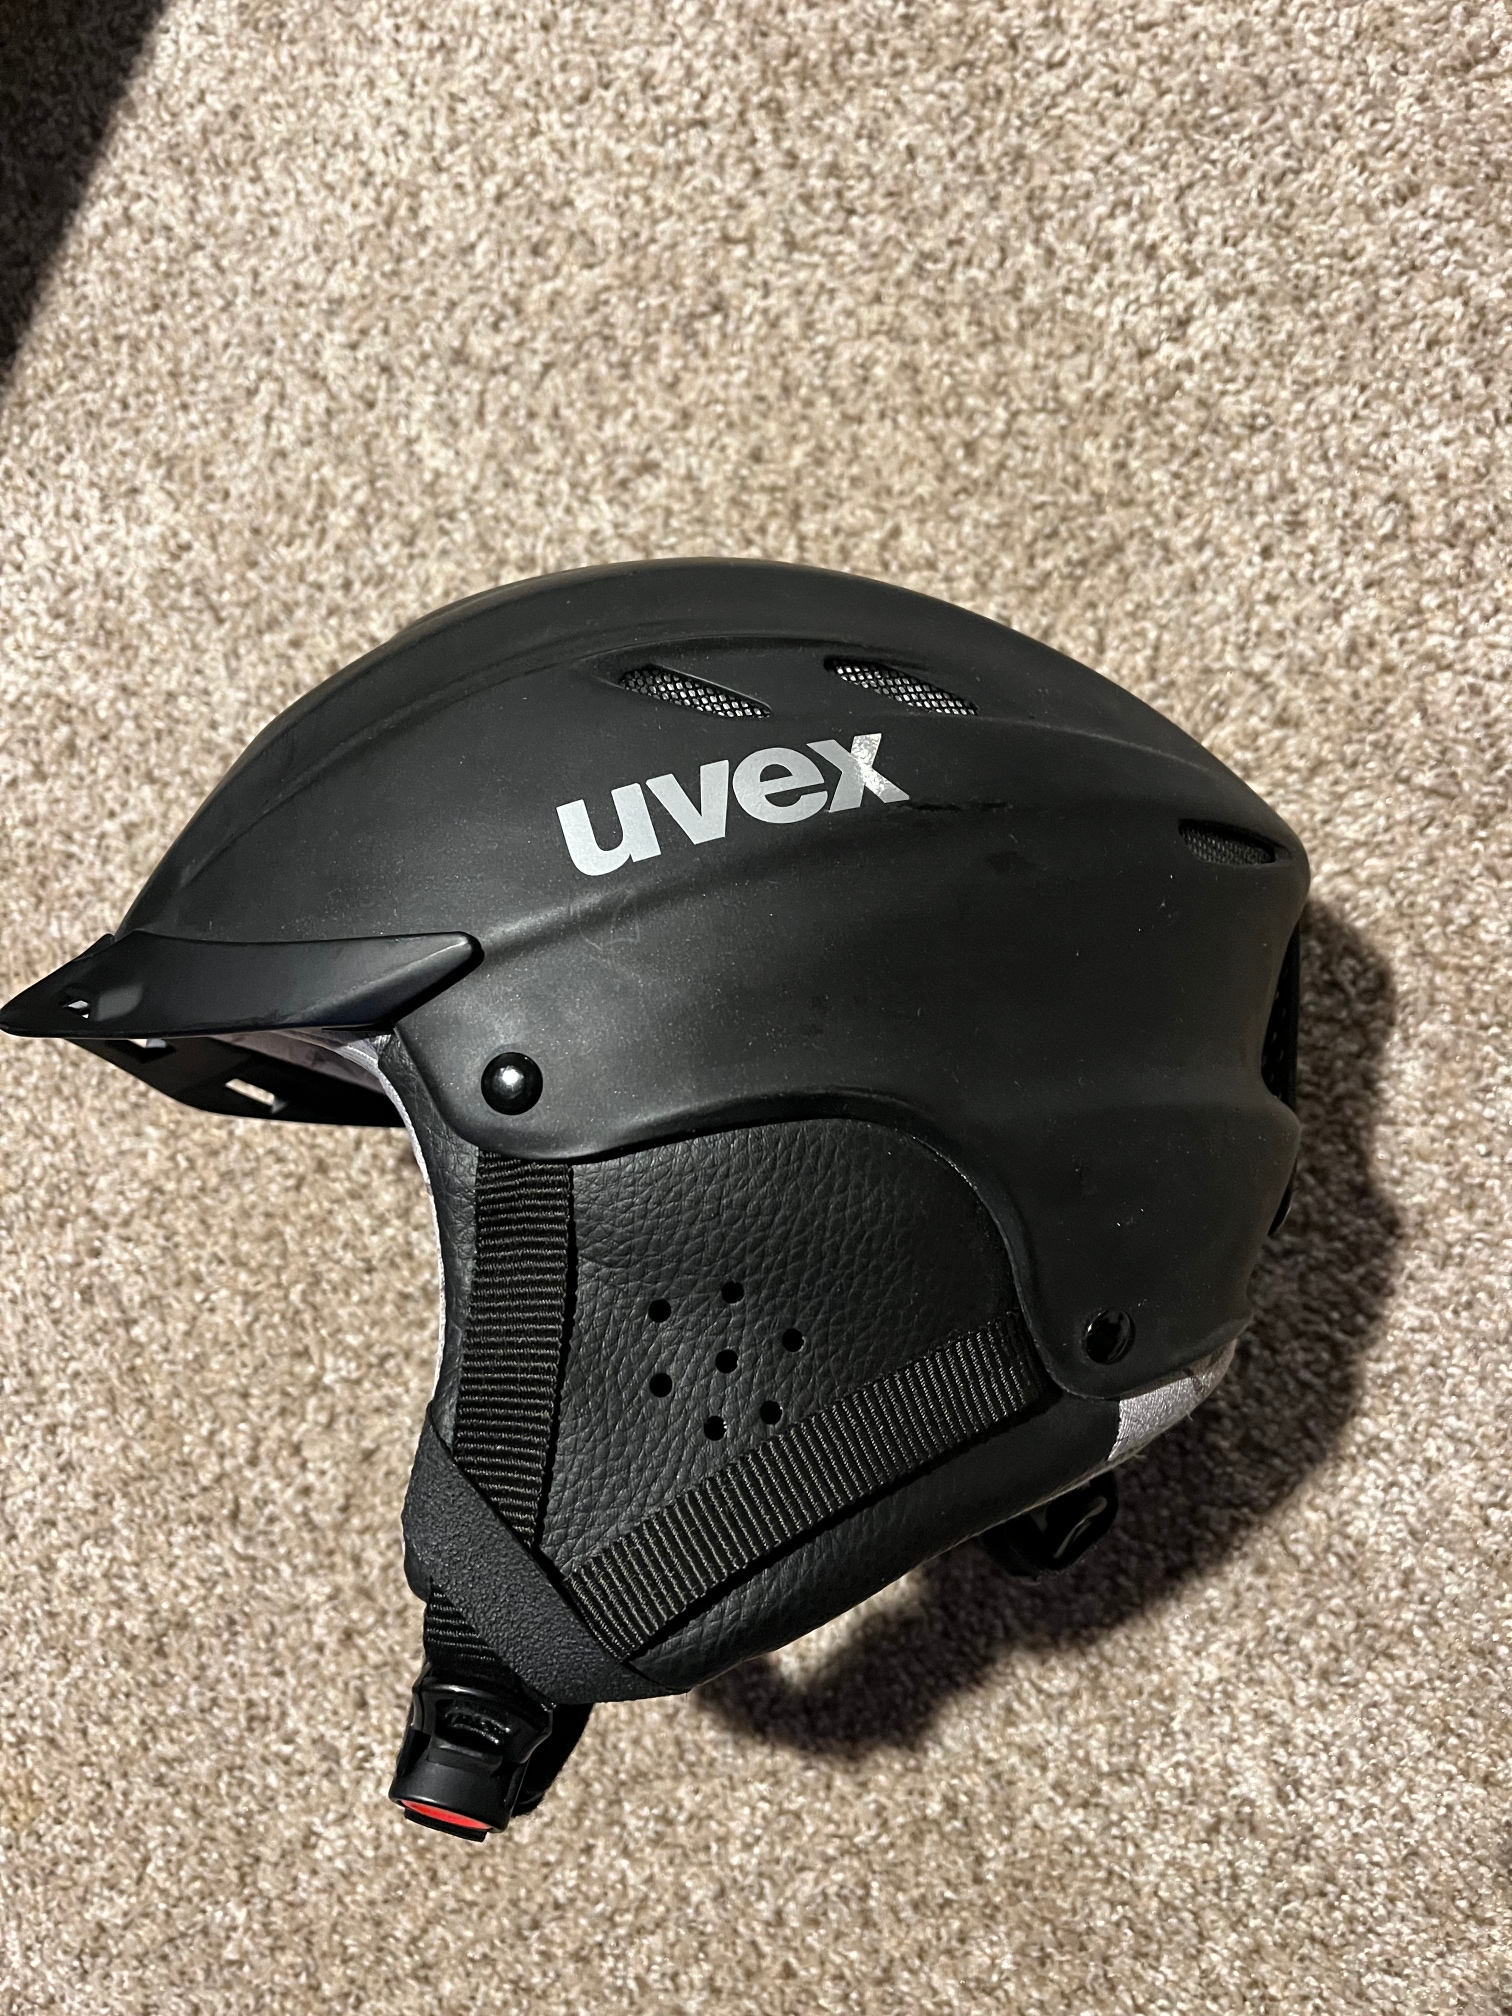 Used Men's Small UVEX Helmet